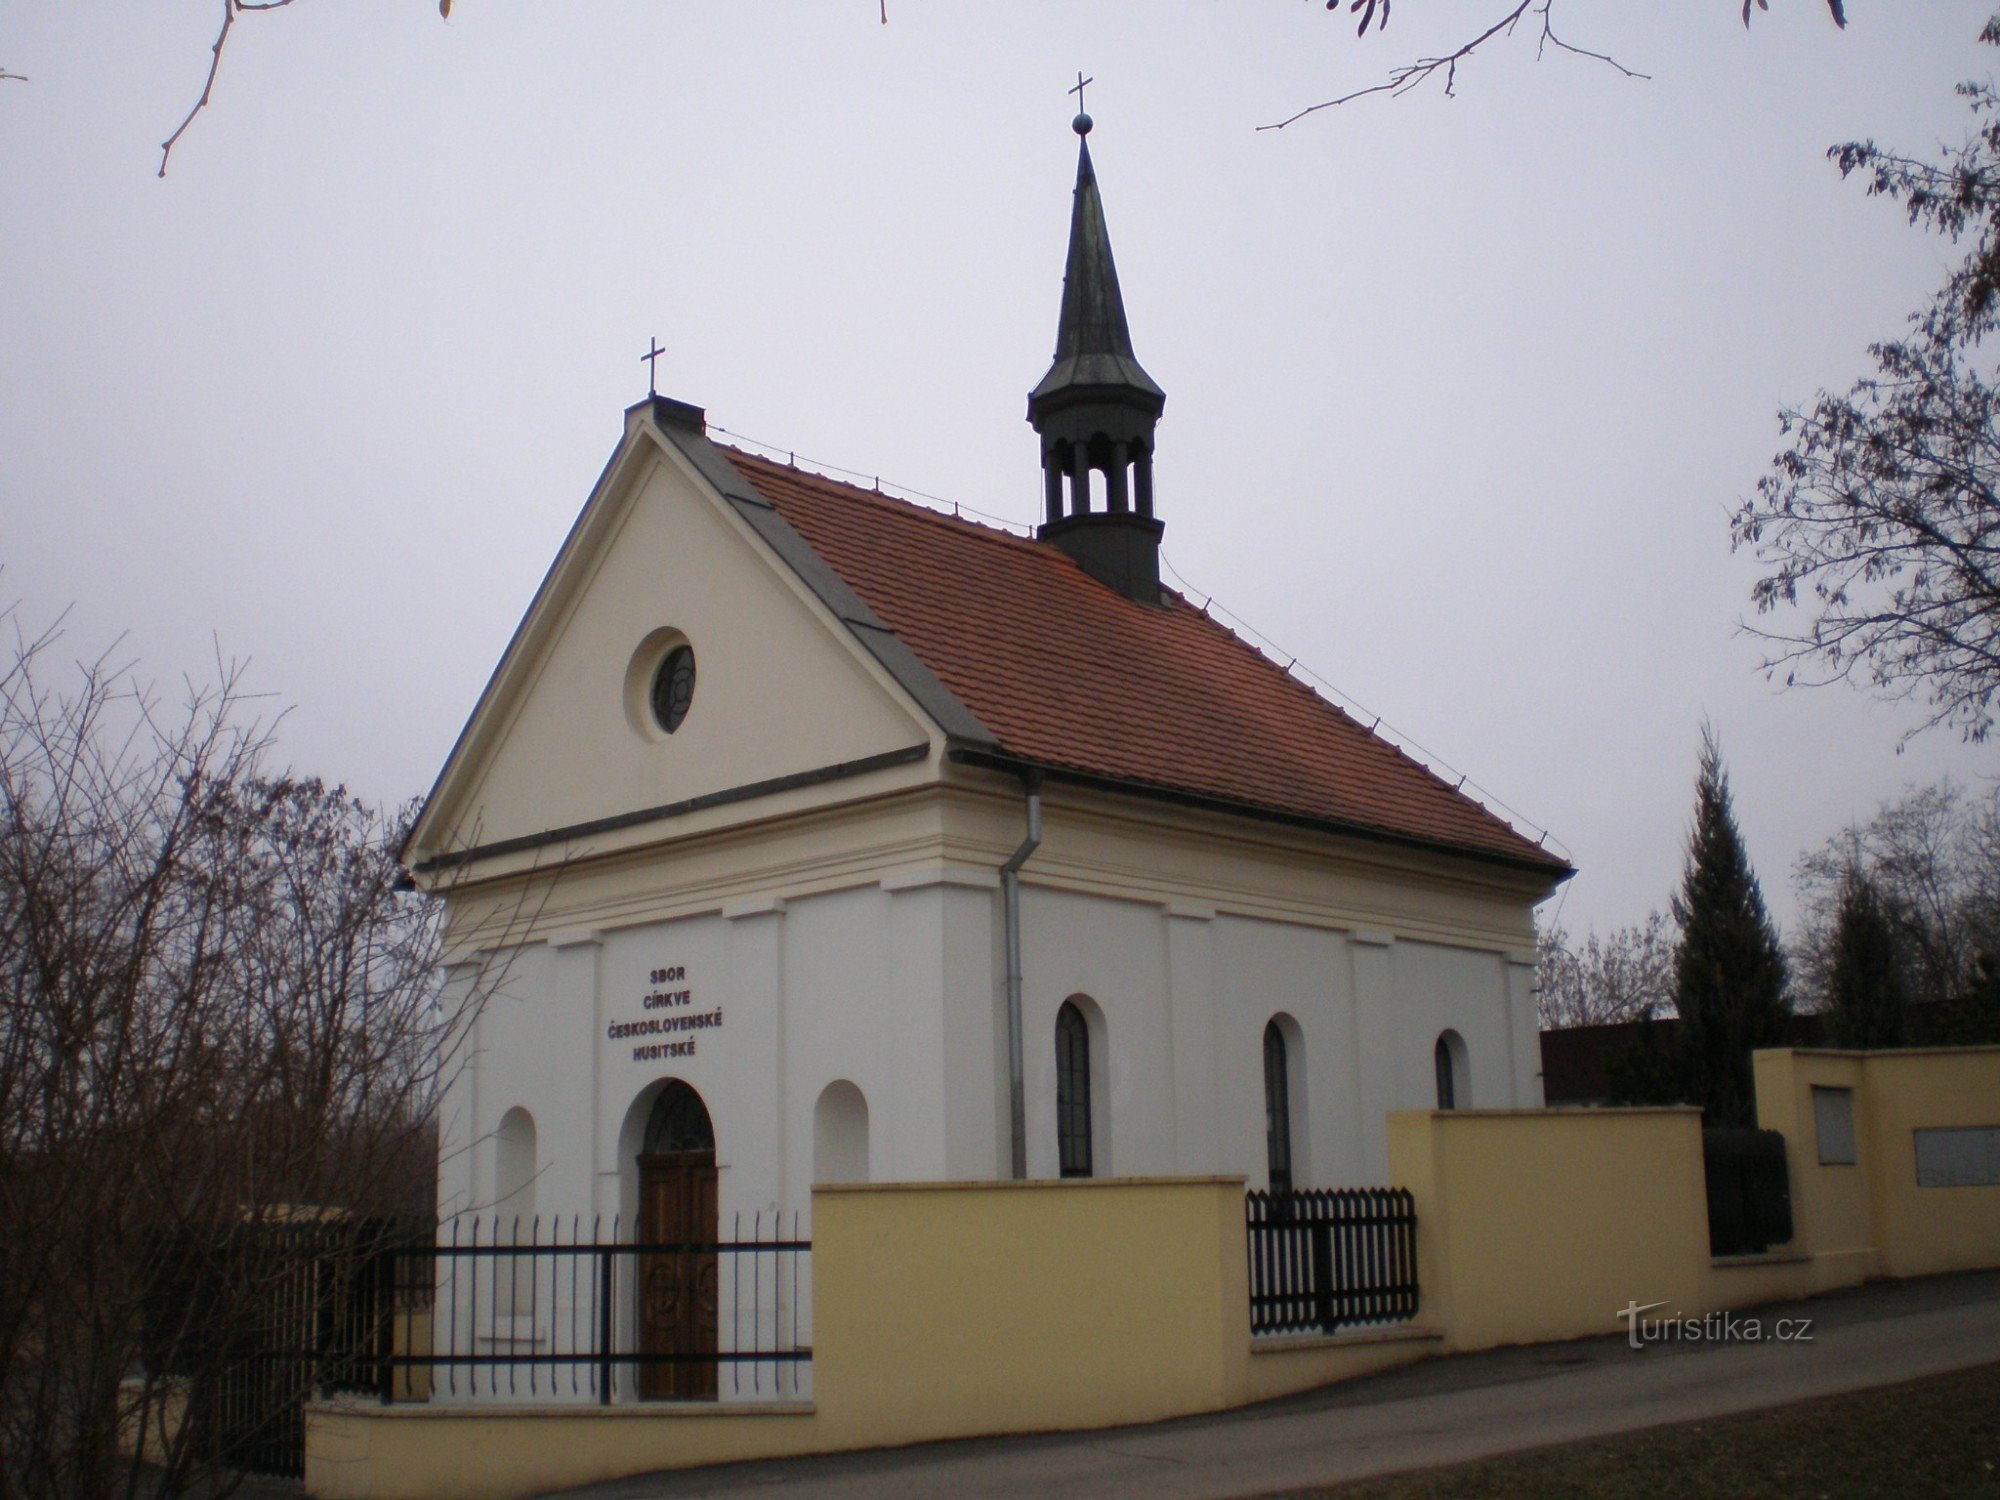 Krč - Husitska cerkev